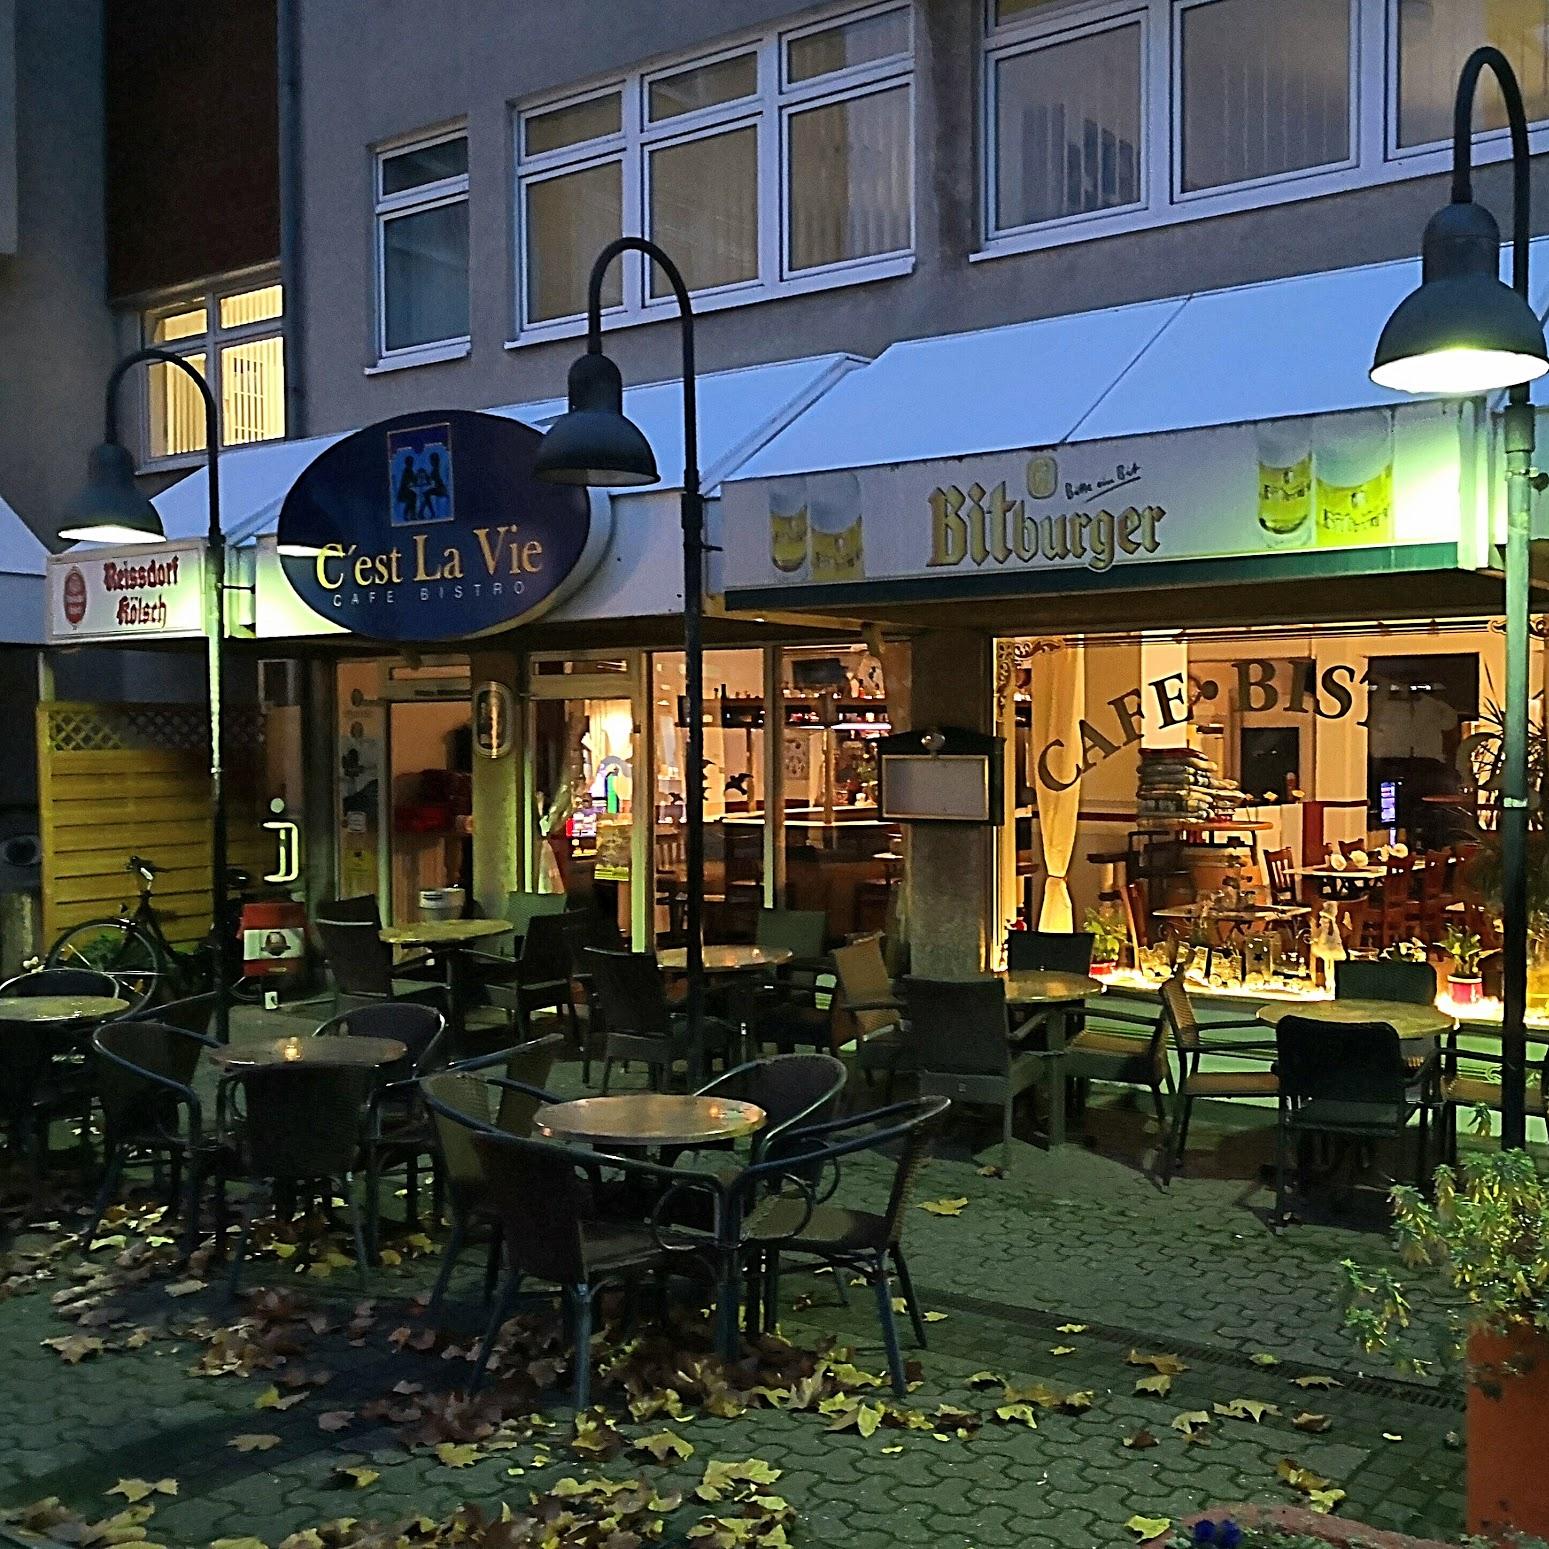 Restaurant "Bistro Cest la vie" in Wesseling